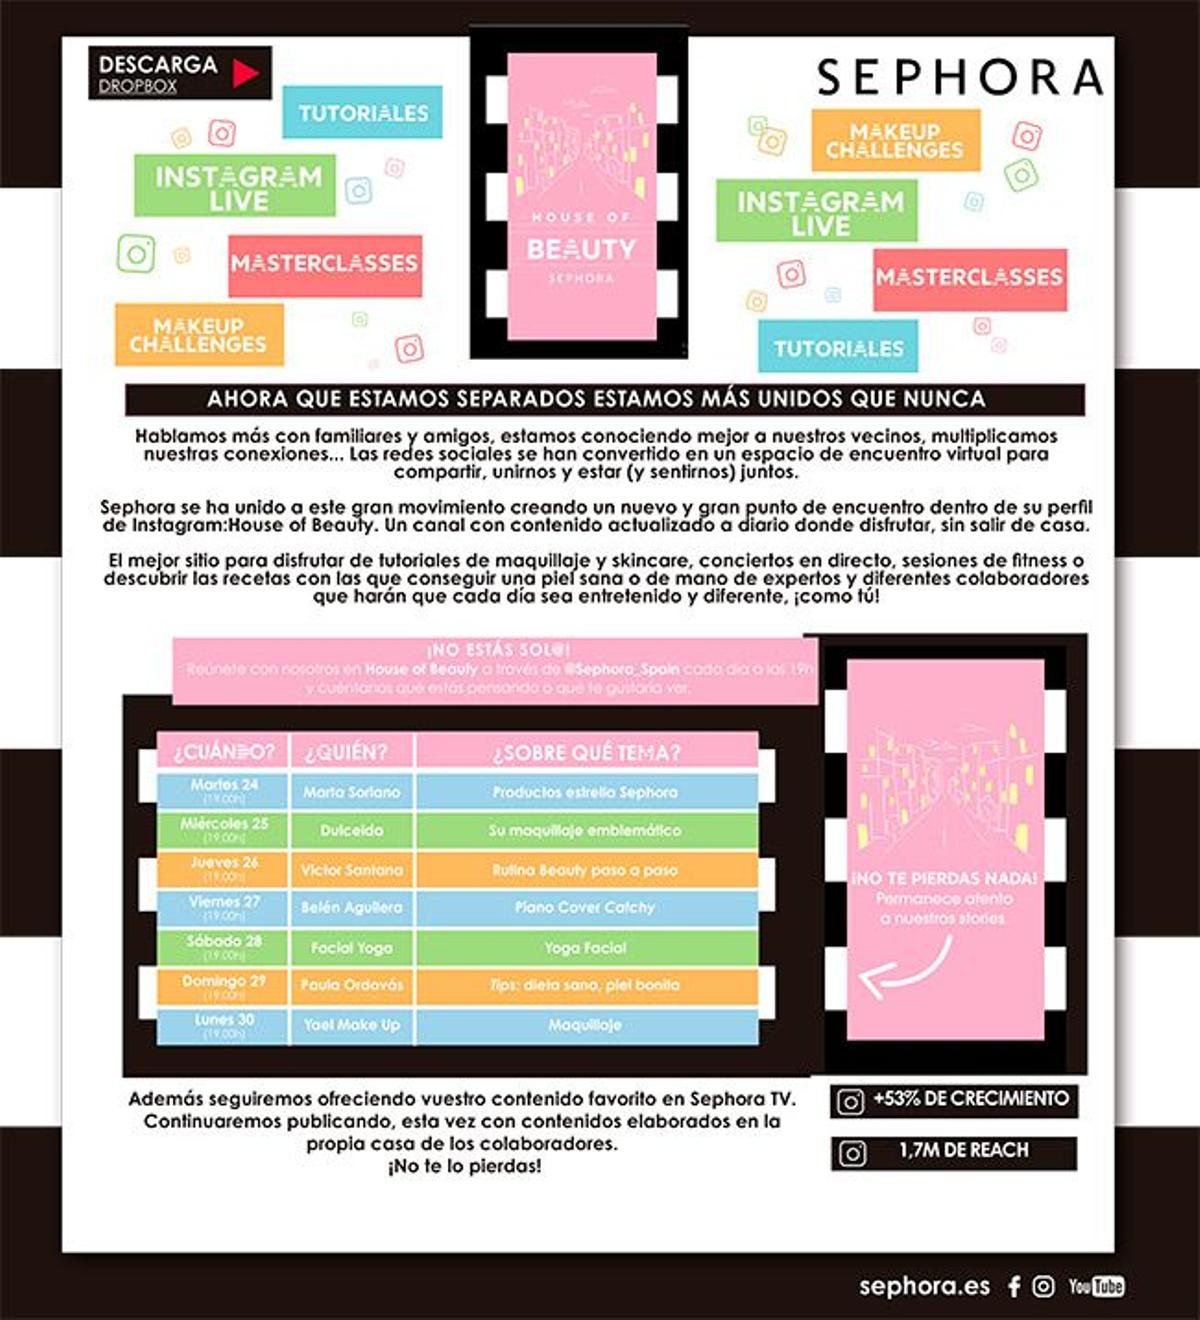 Calendario de actividades en el canal 'House of Beauty de Sephora'